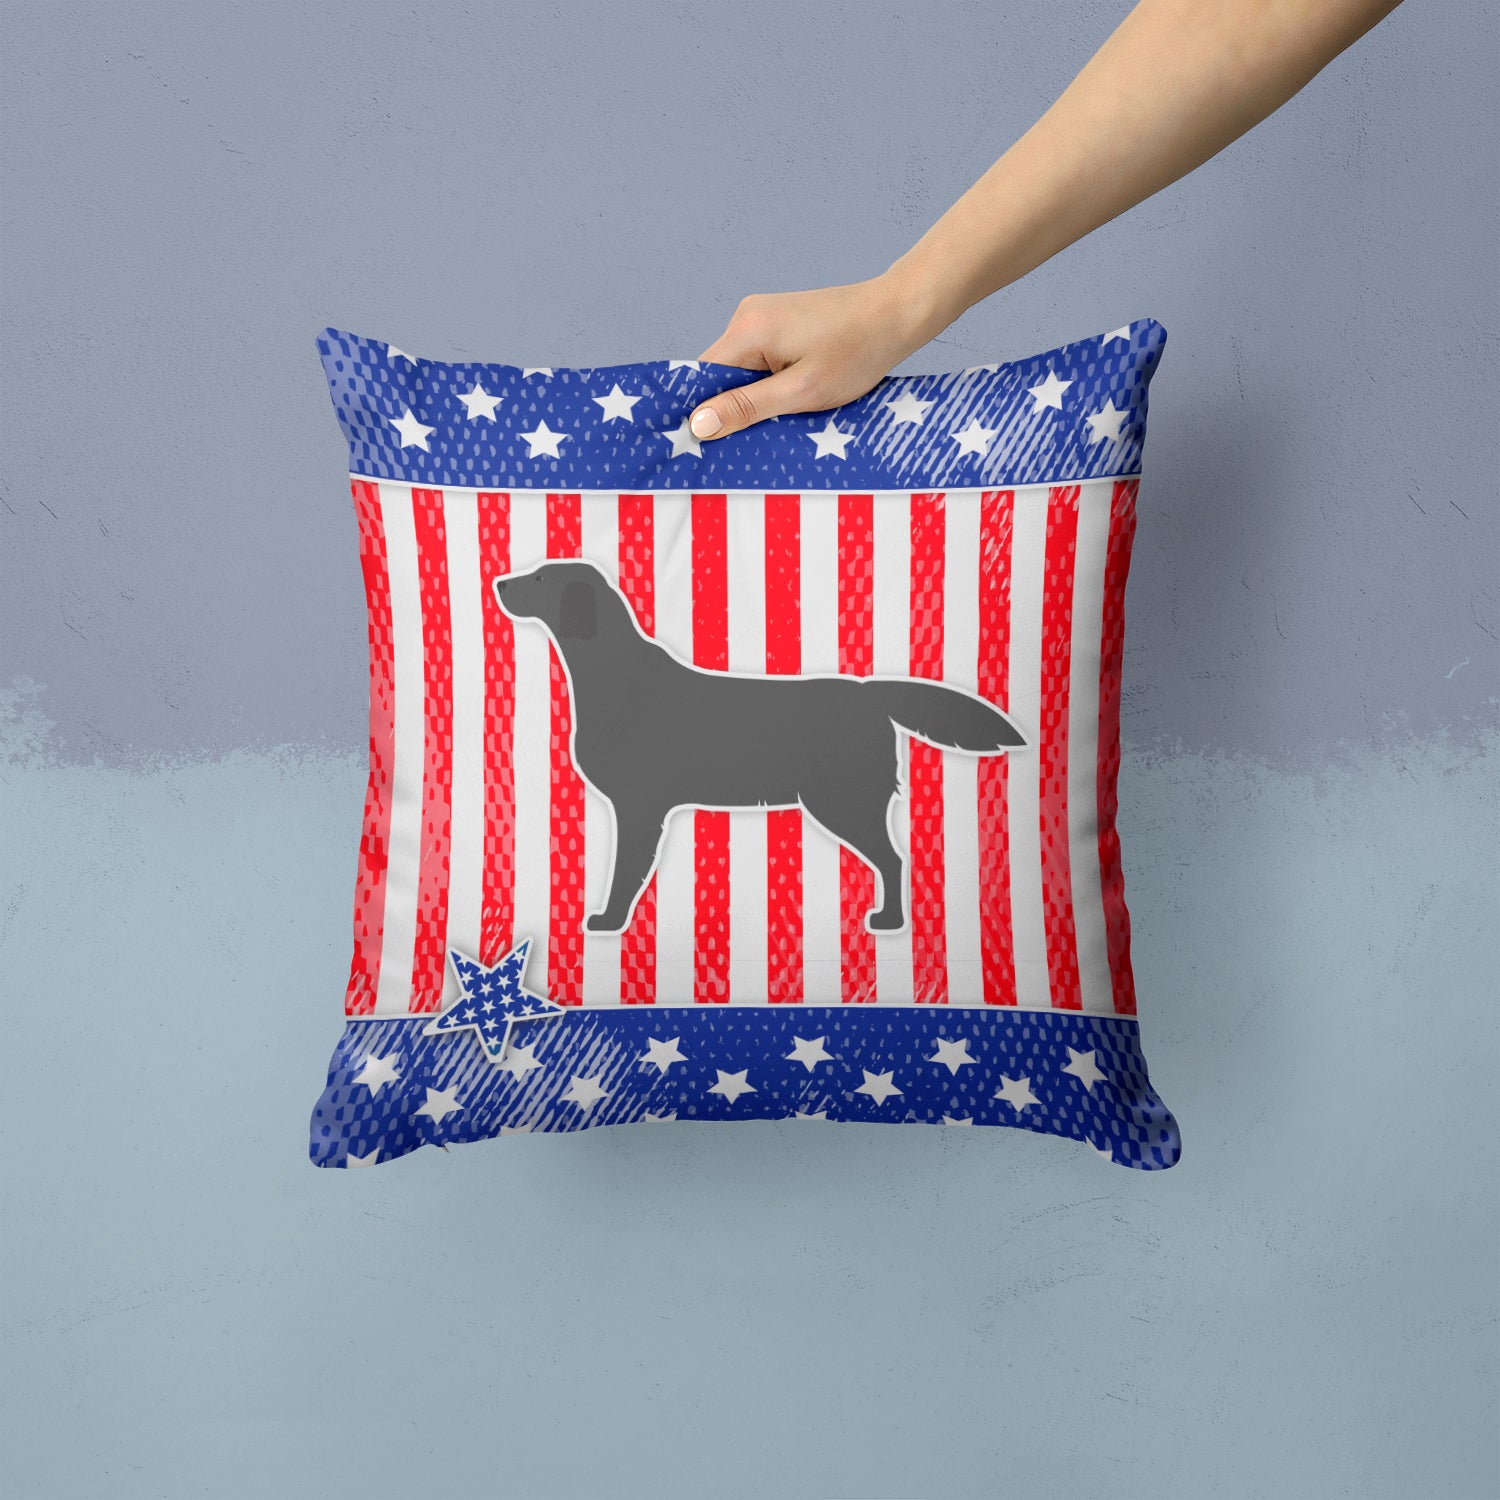 USA Patriotic Black Labrador Retriever Fabric Decorative Pillow BB3308PW1414 - the-store.com